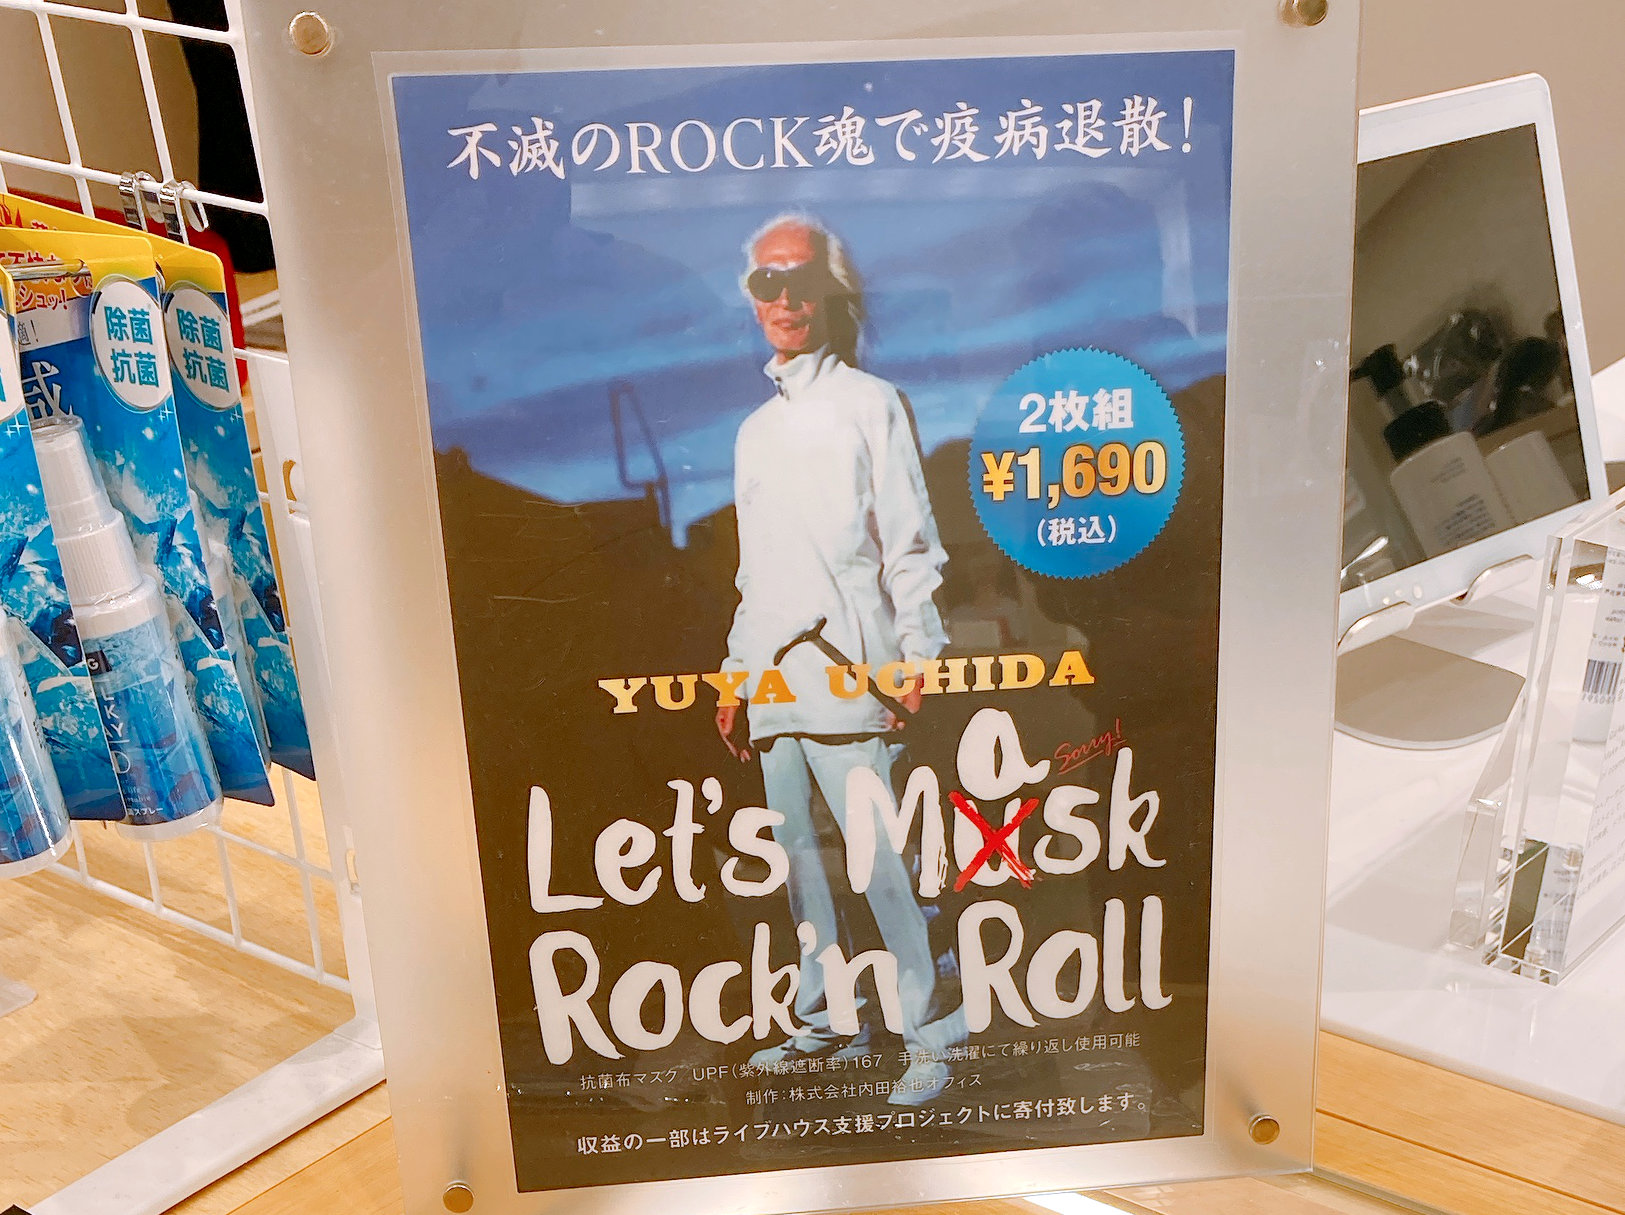 不滅のrock魂で疫病退散 内田裕也のロックンロールマスクが最高にイカす